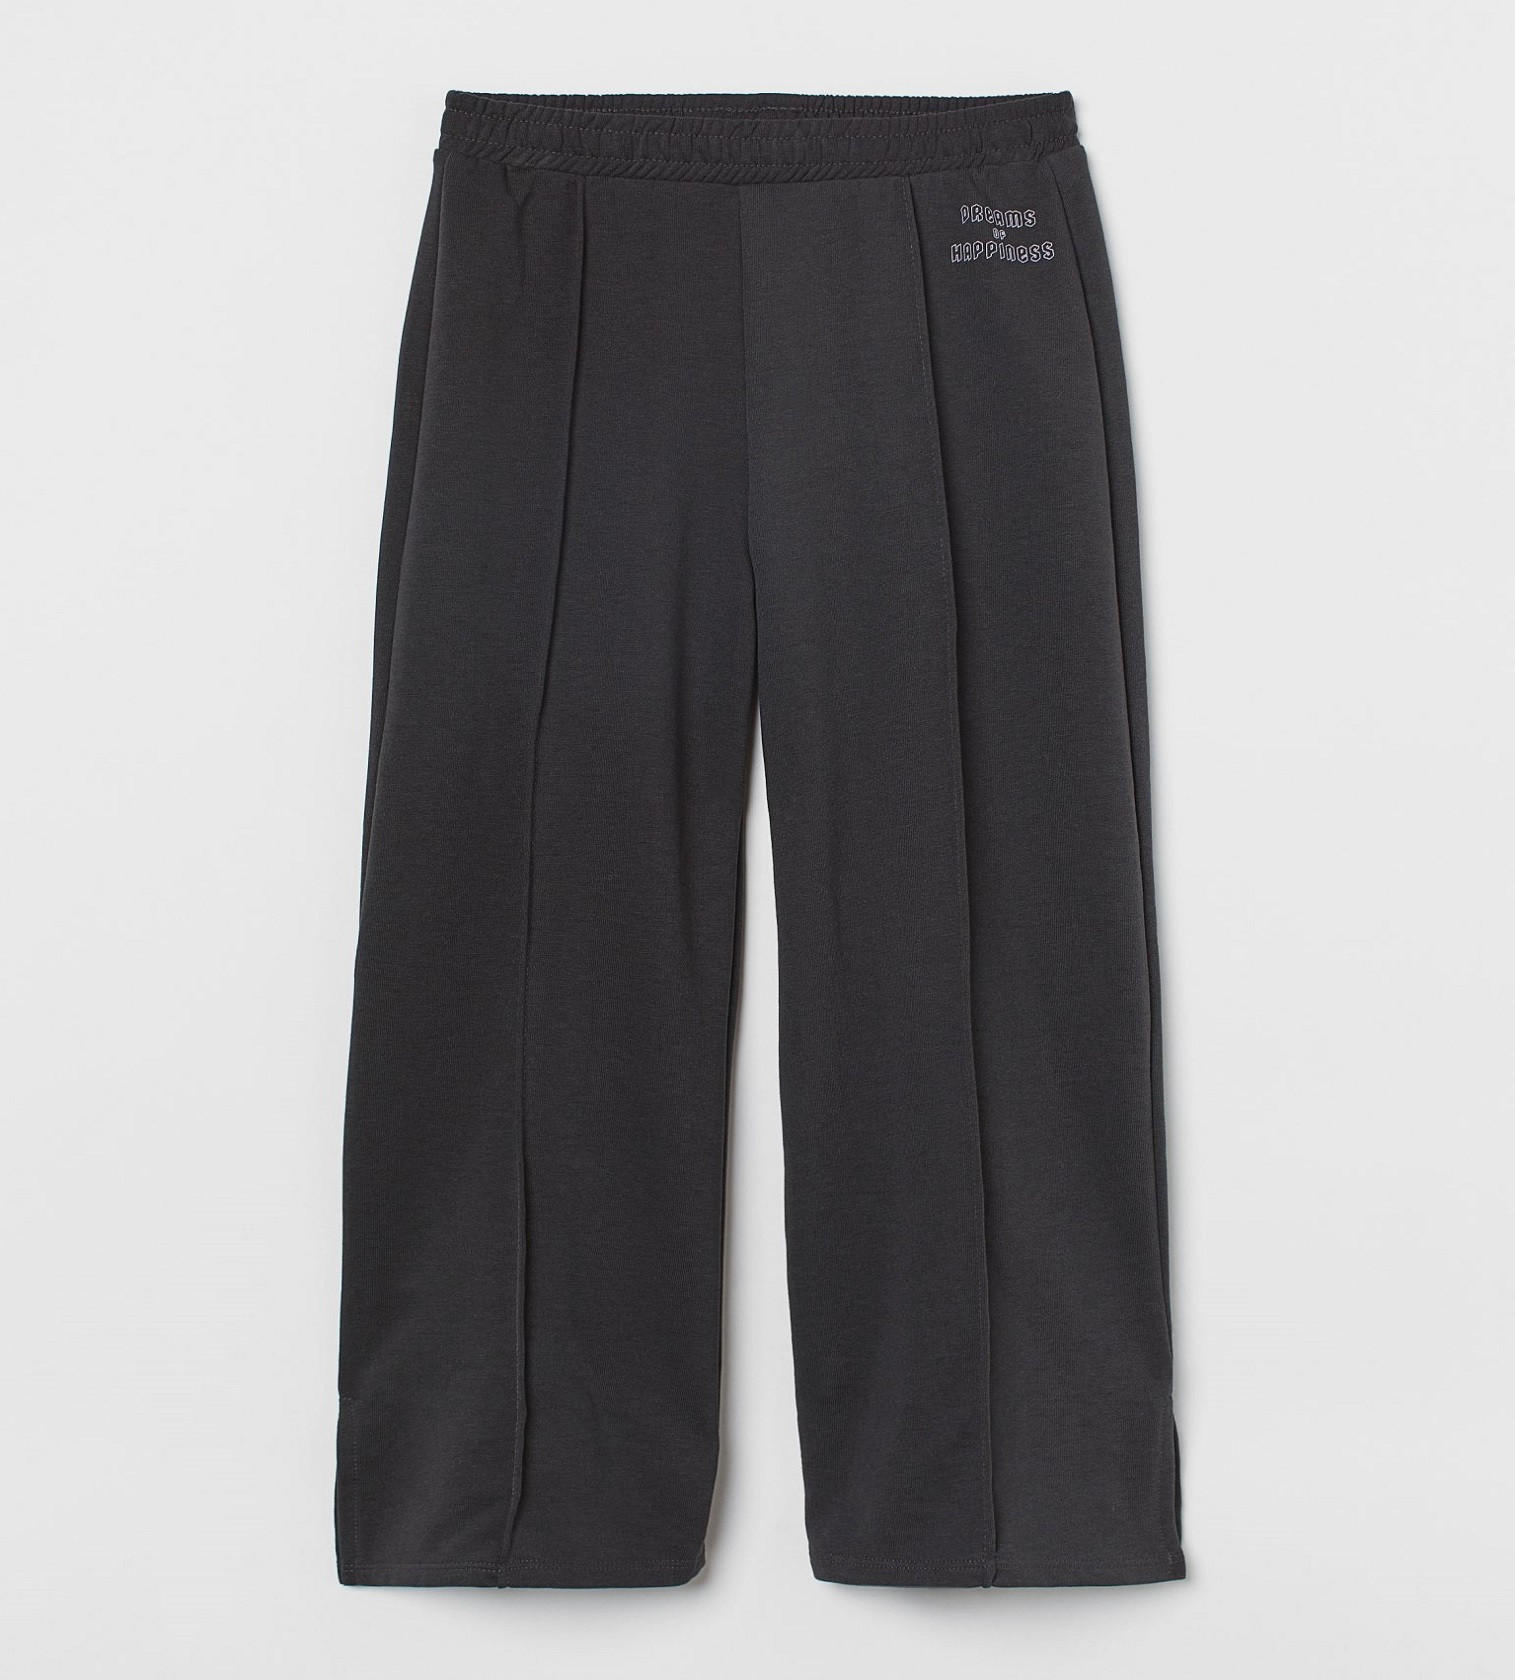 Купить Широкие штаны джоггеры H&M Dark gray/Dreams - фото 1